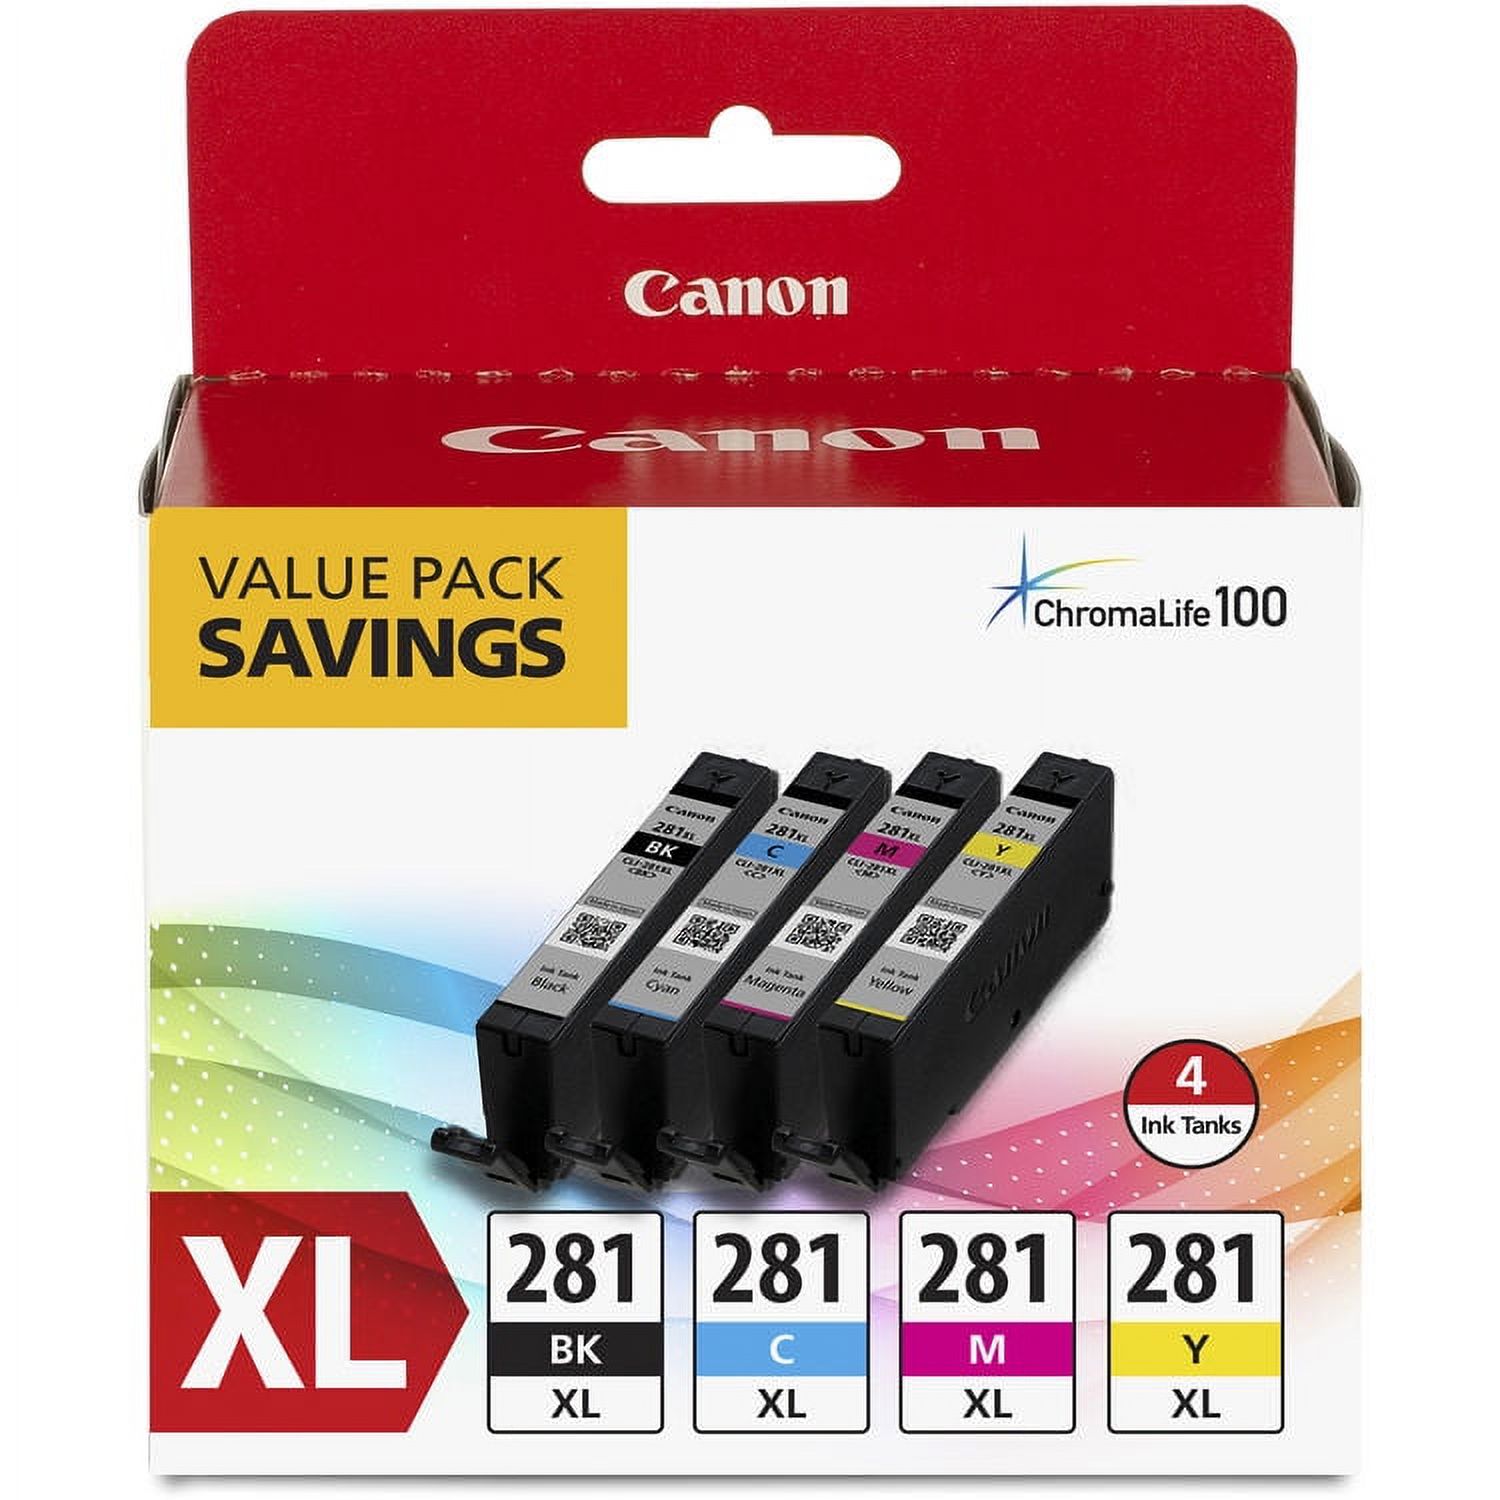 Genuine Canon Canon CLI-281 XL BKCMY 4-Color Tank Value Pack (2037C005) for PIXMA TR7520, TR8520,TS6120, TS8120, TS9120, TS702, TS9521C, TS9520, TS8220, TS6220 Printers - image 1 of 1